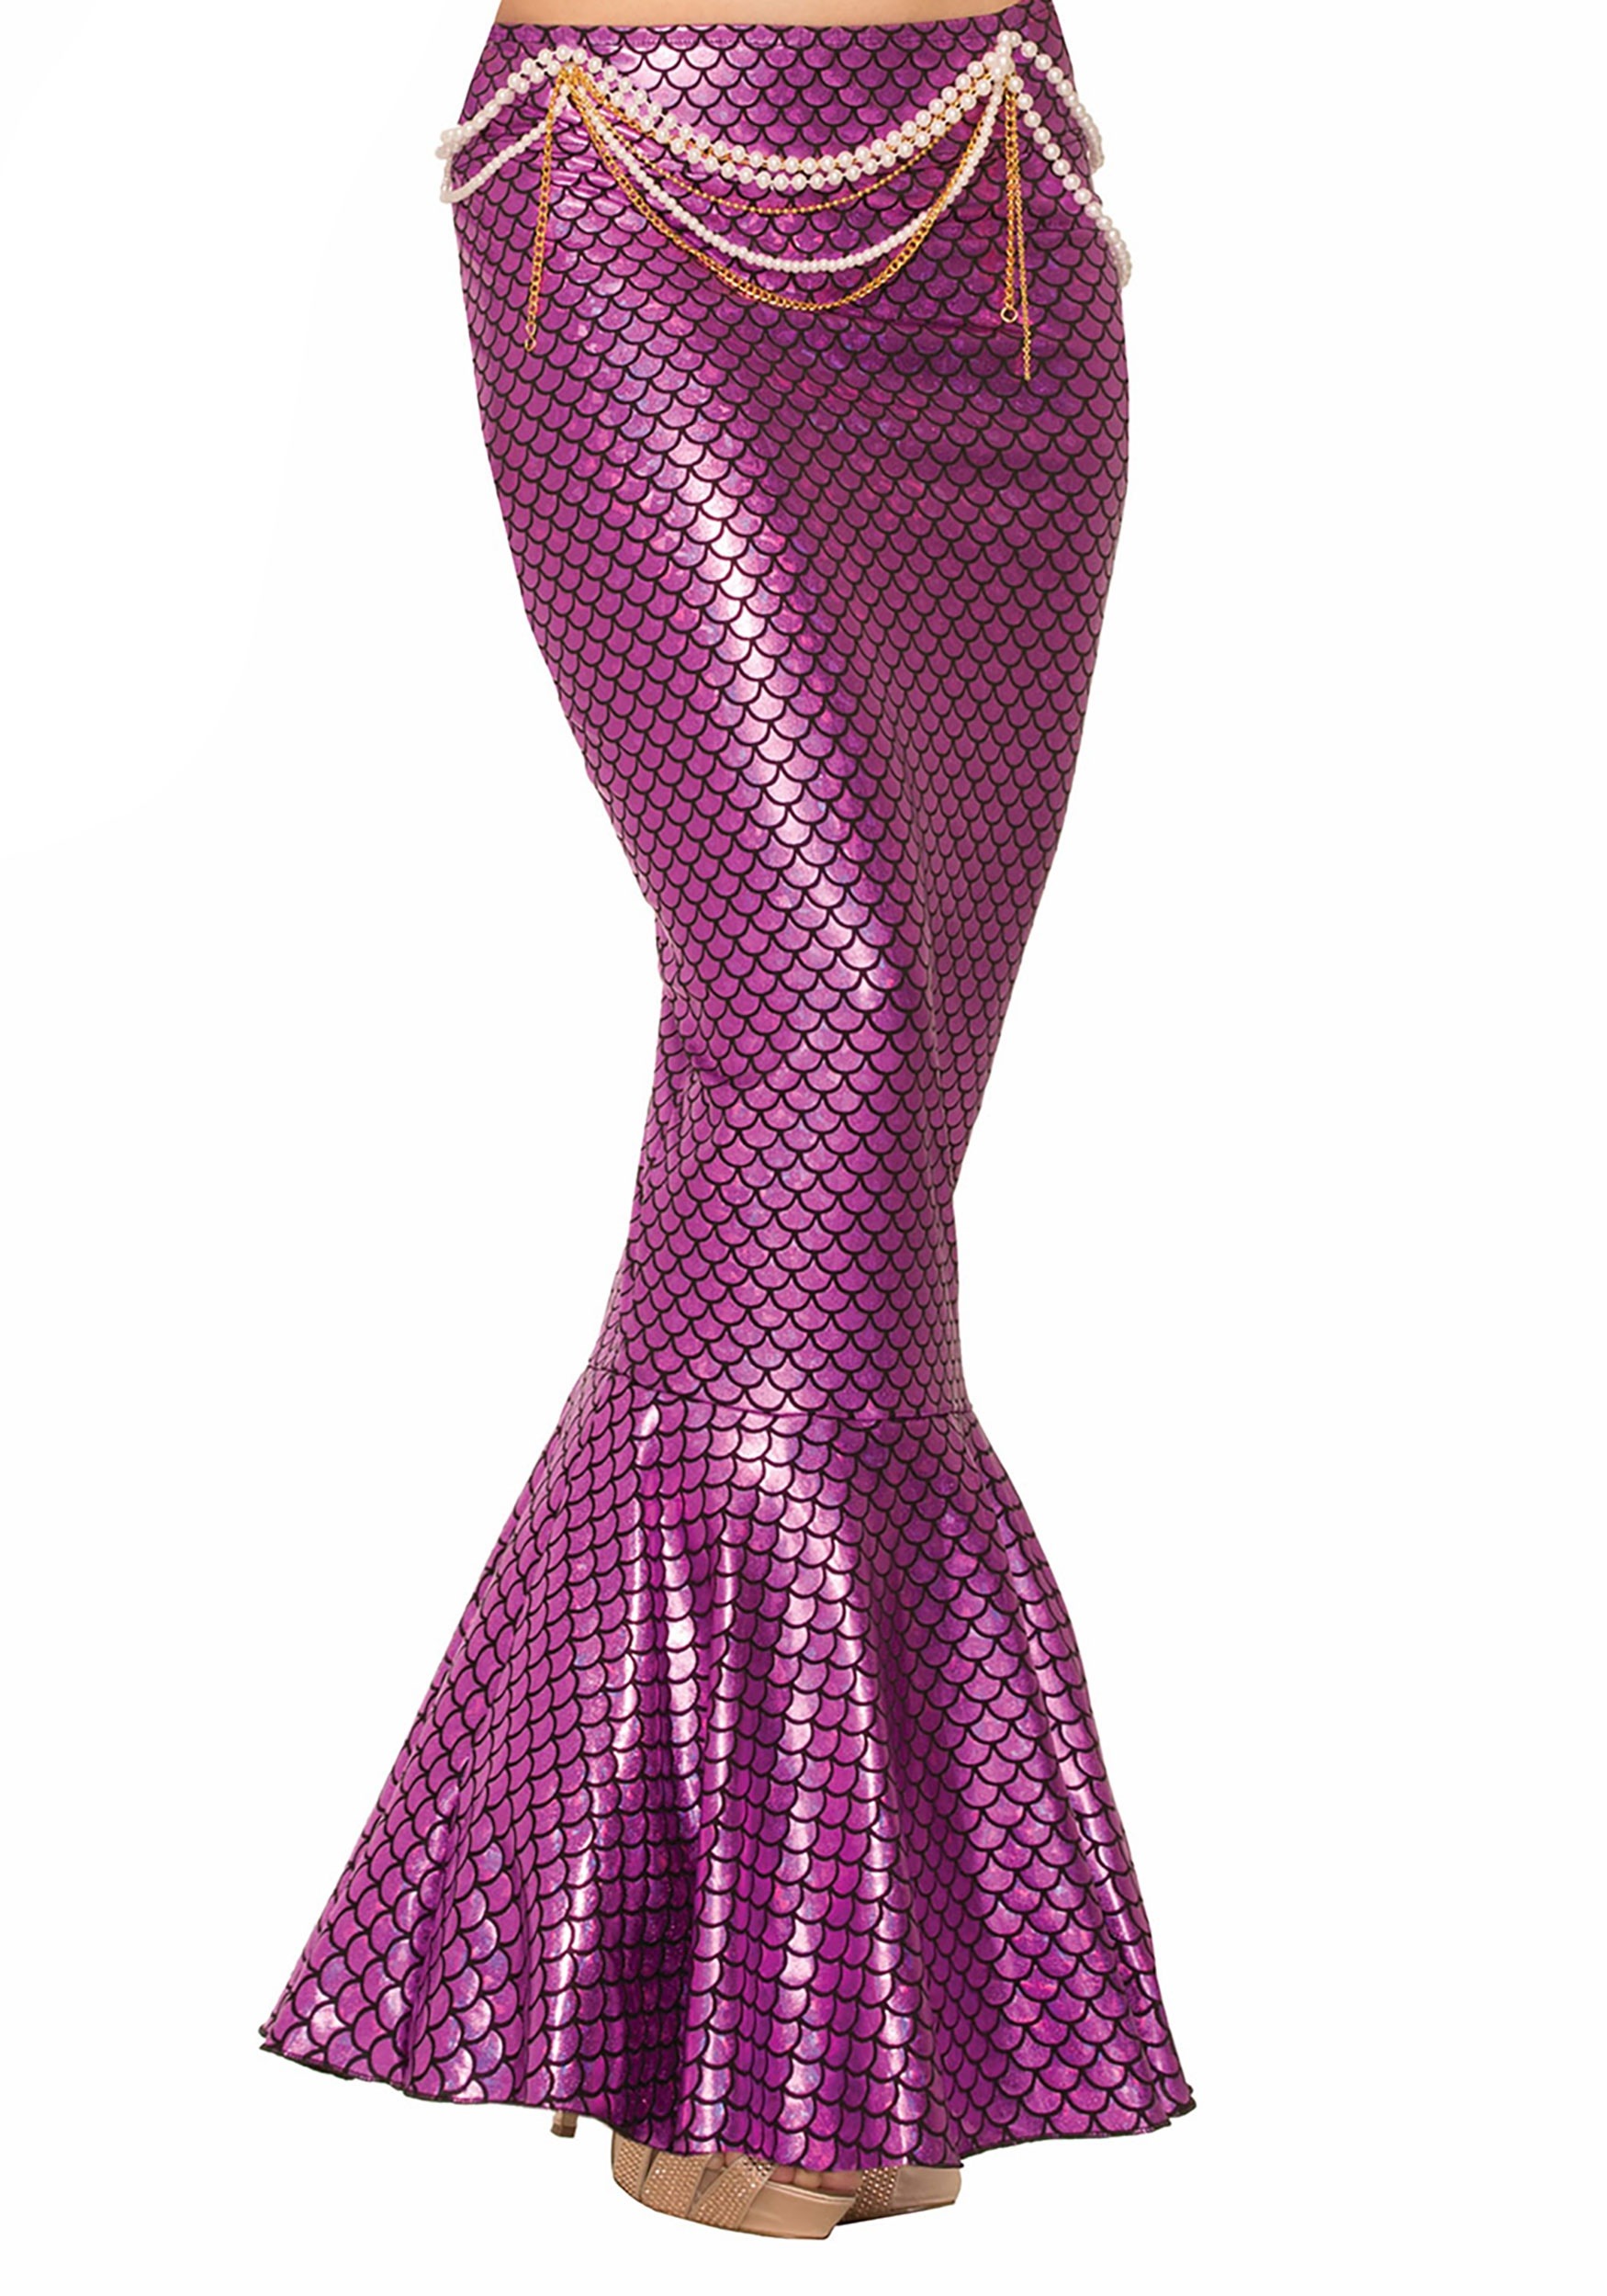 Women’s Pink Mermaid Fin Skirt Costume